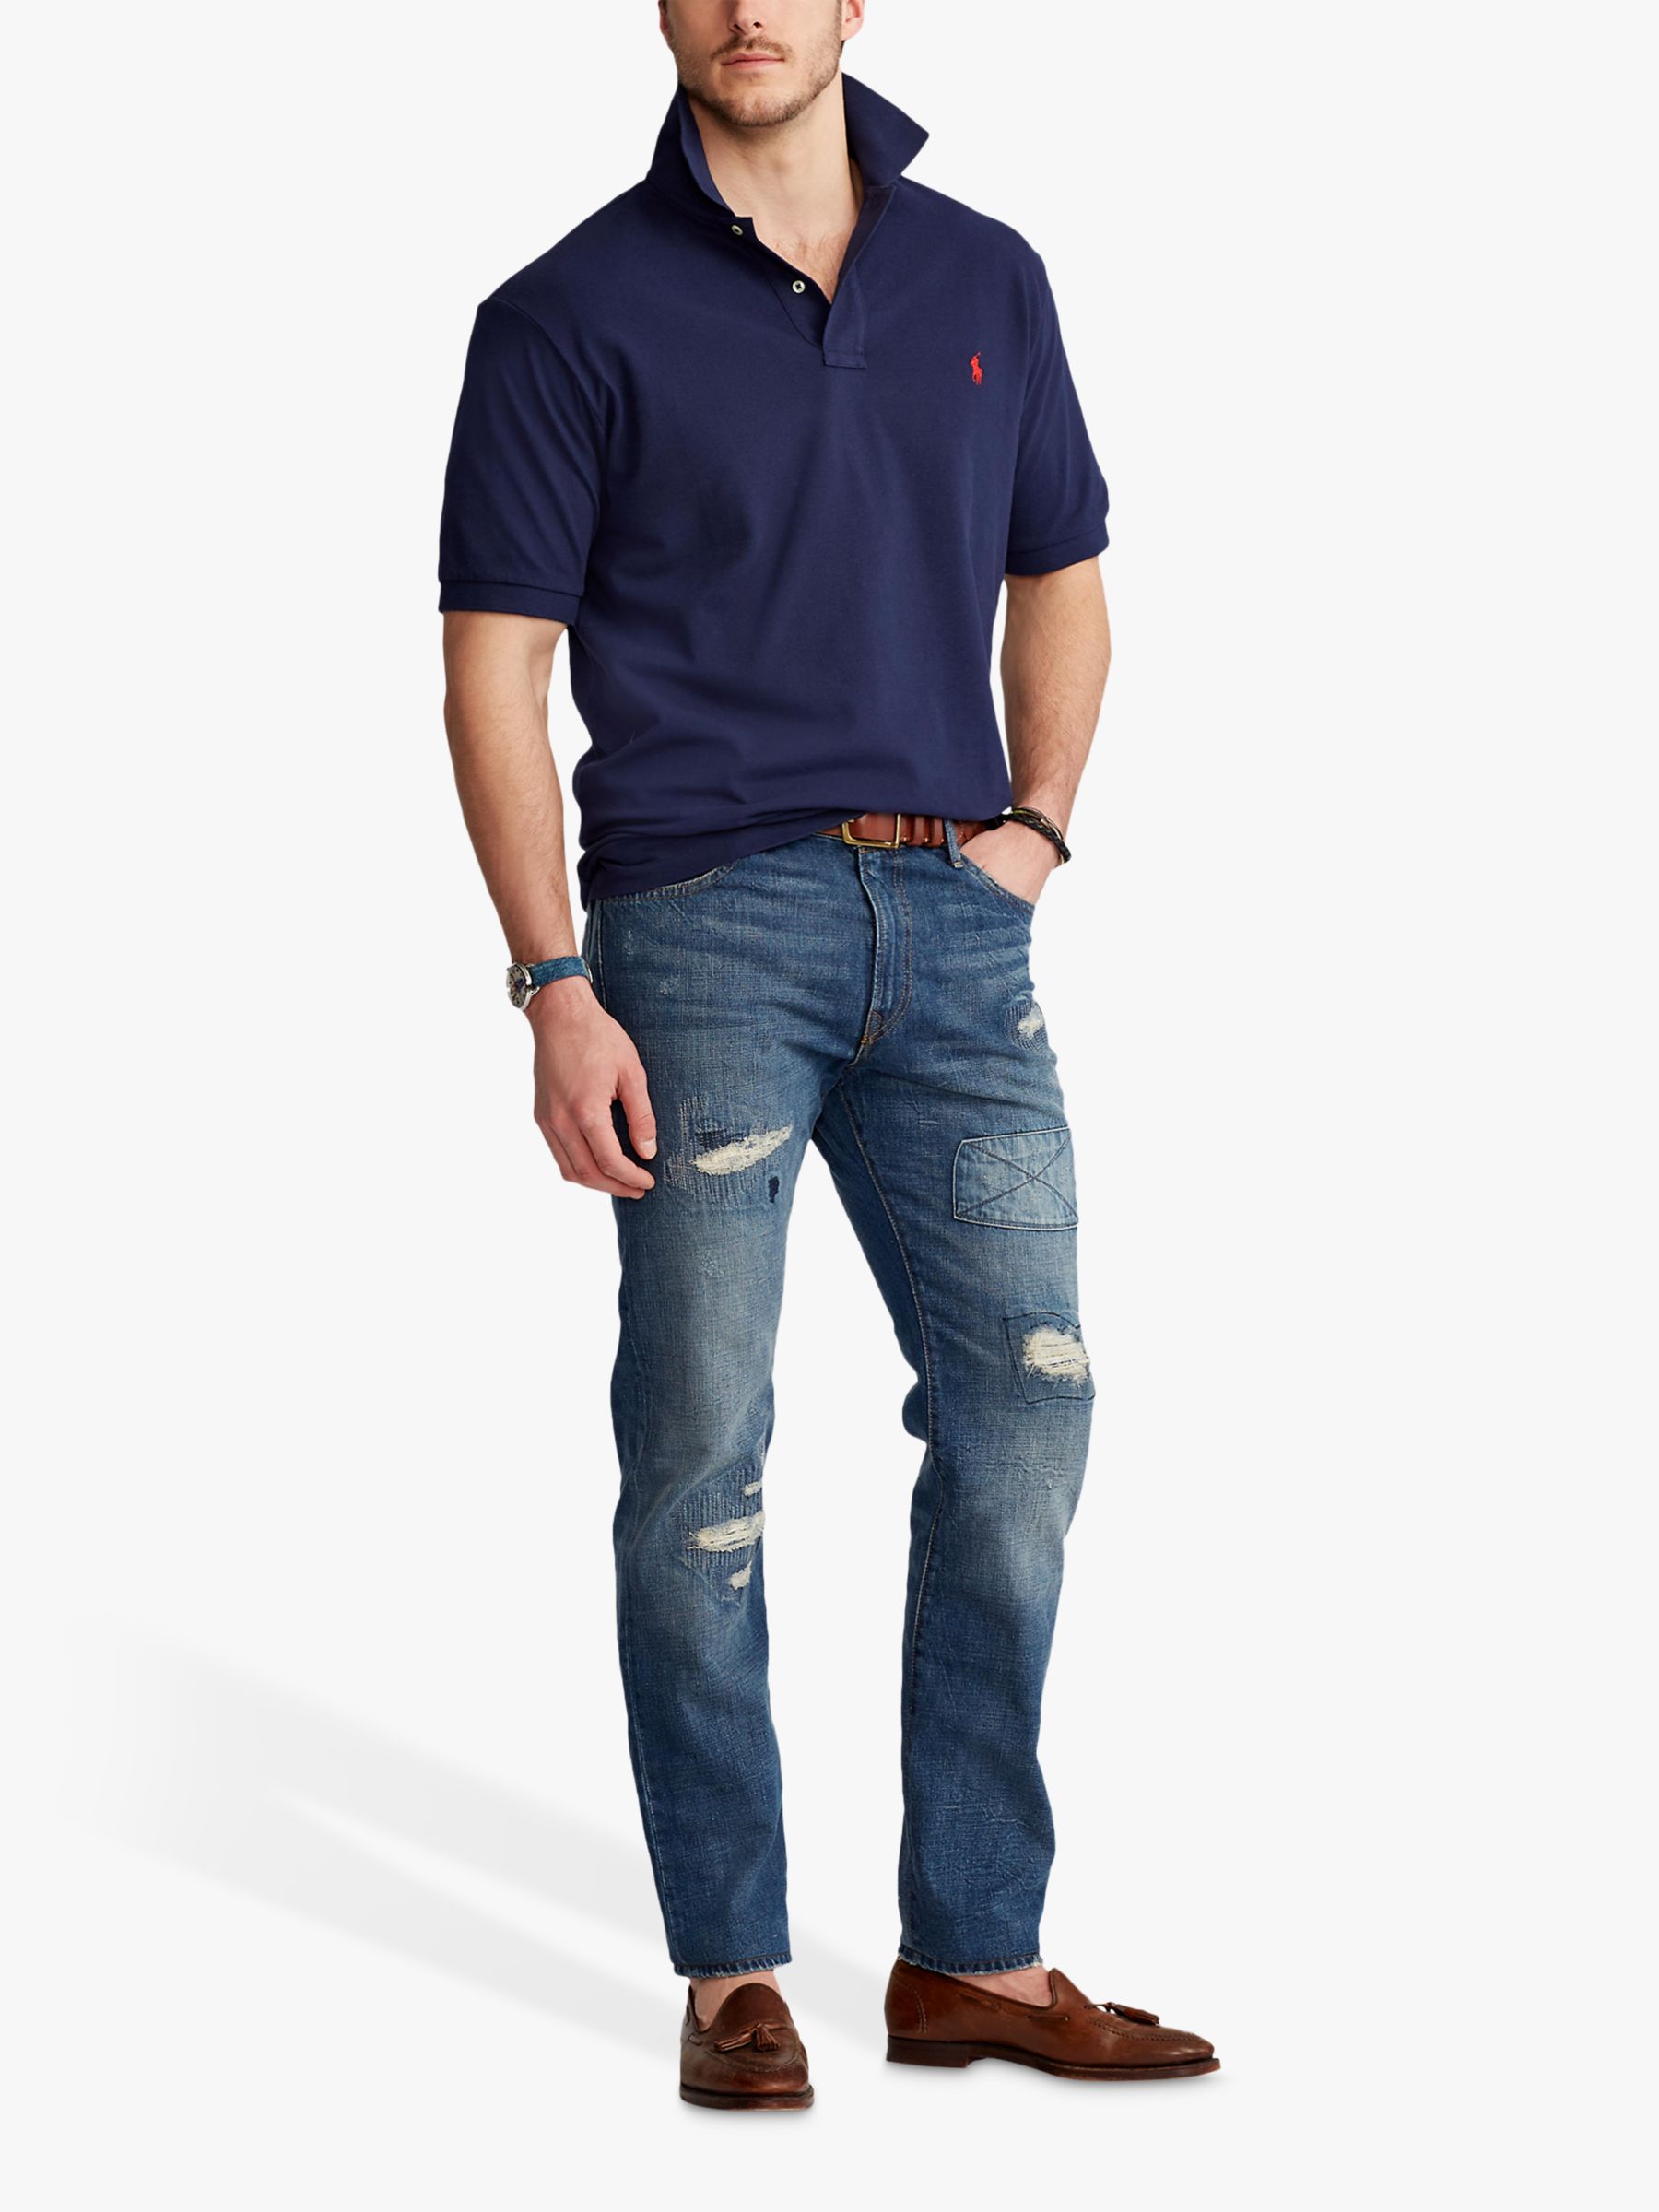 Polo Ralph Lauren Big & Tall Regular Fit Polo Shirt, Newport Navy at ...